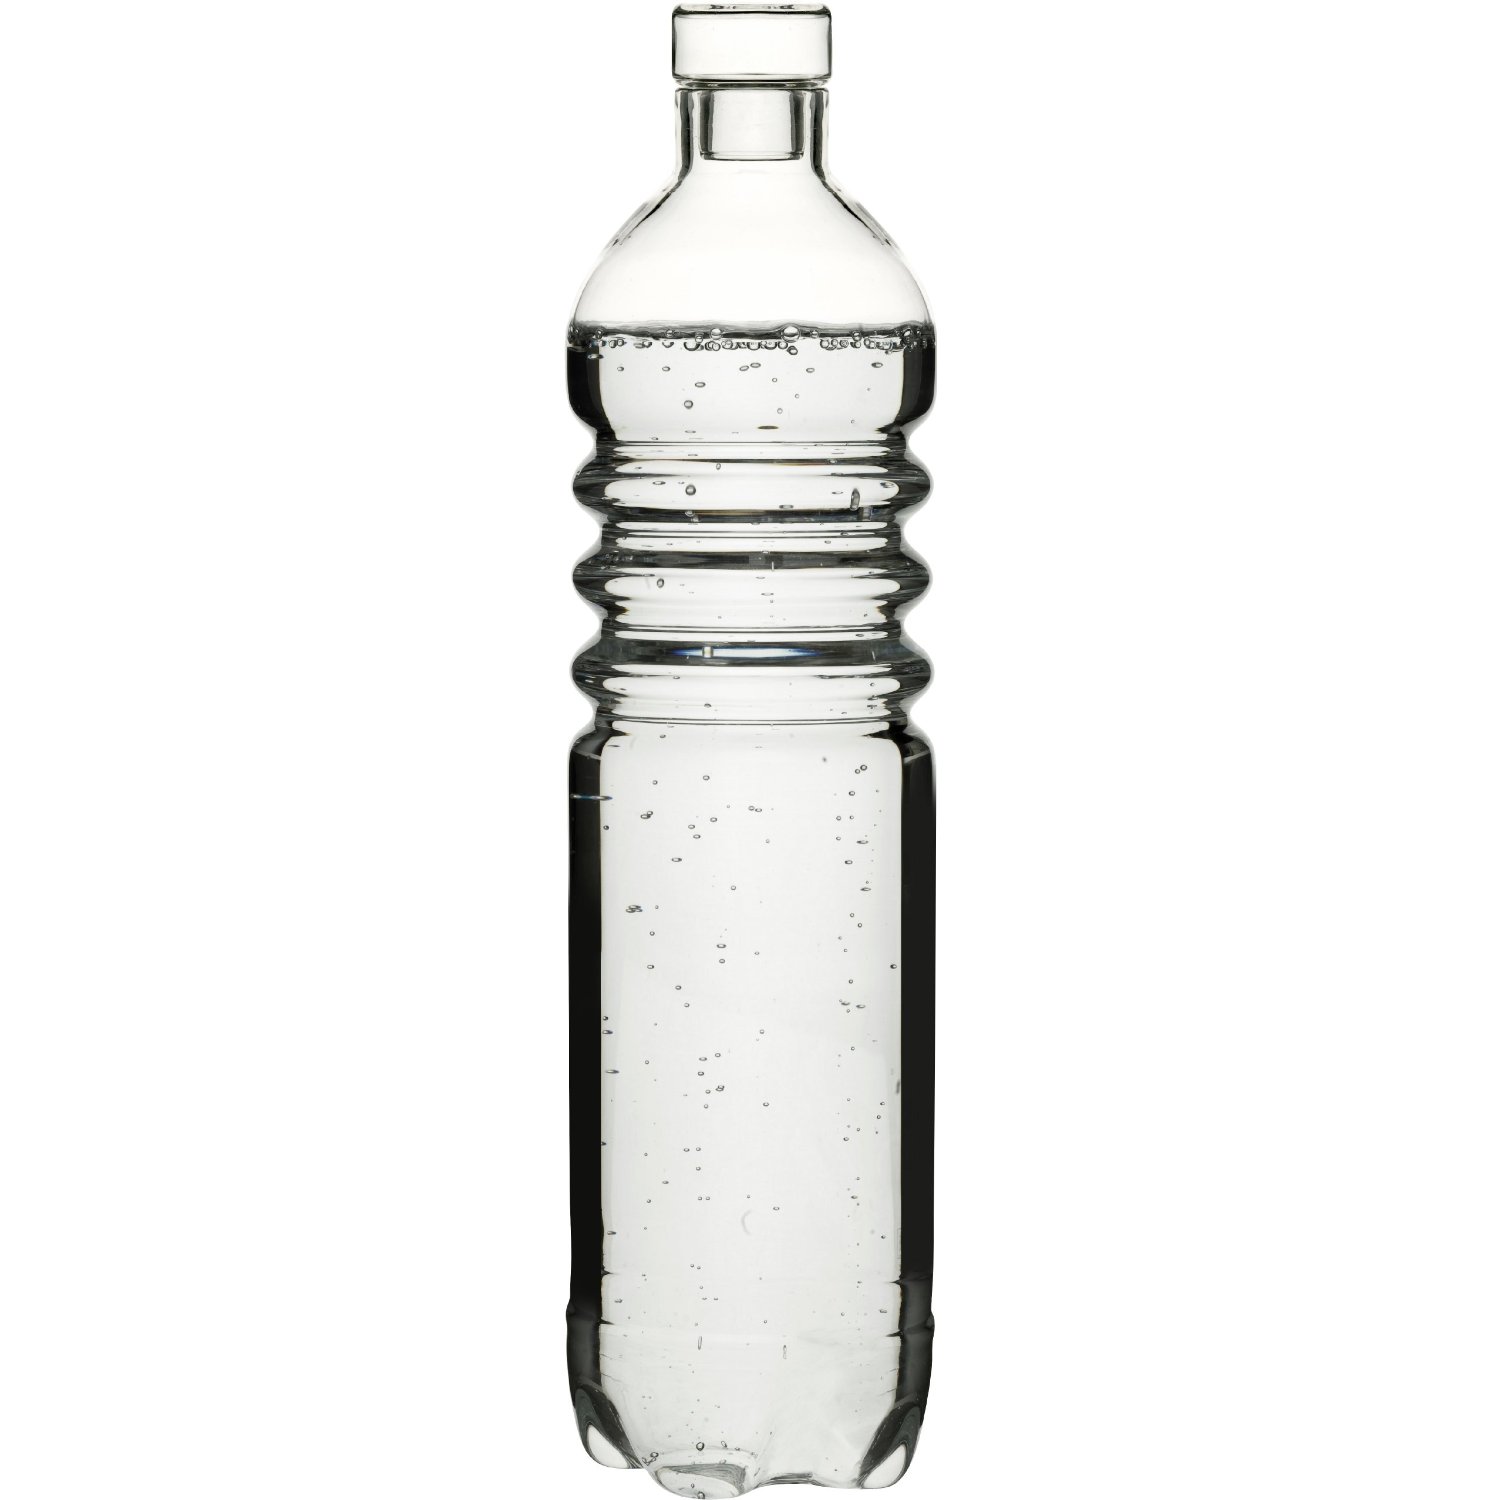 Plastic Bottle Clip Art